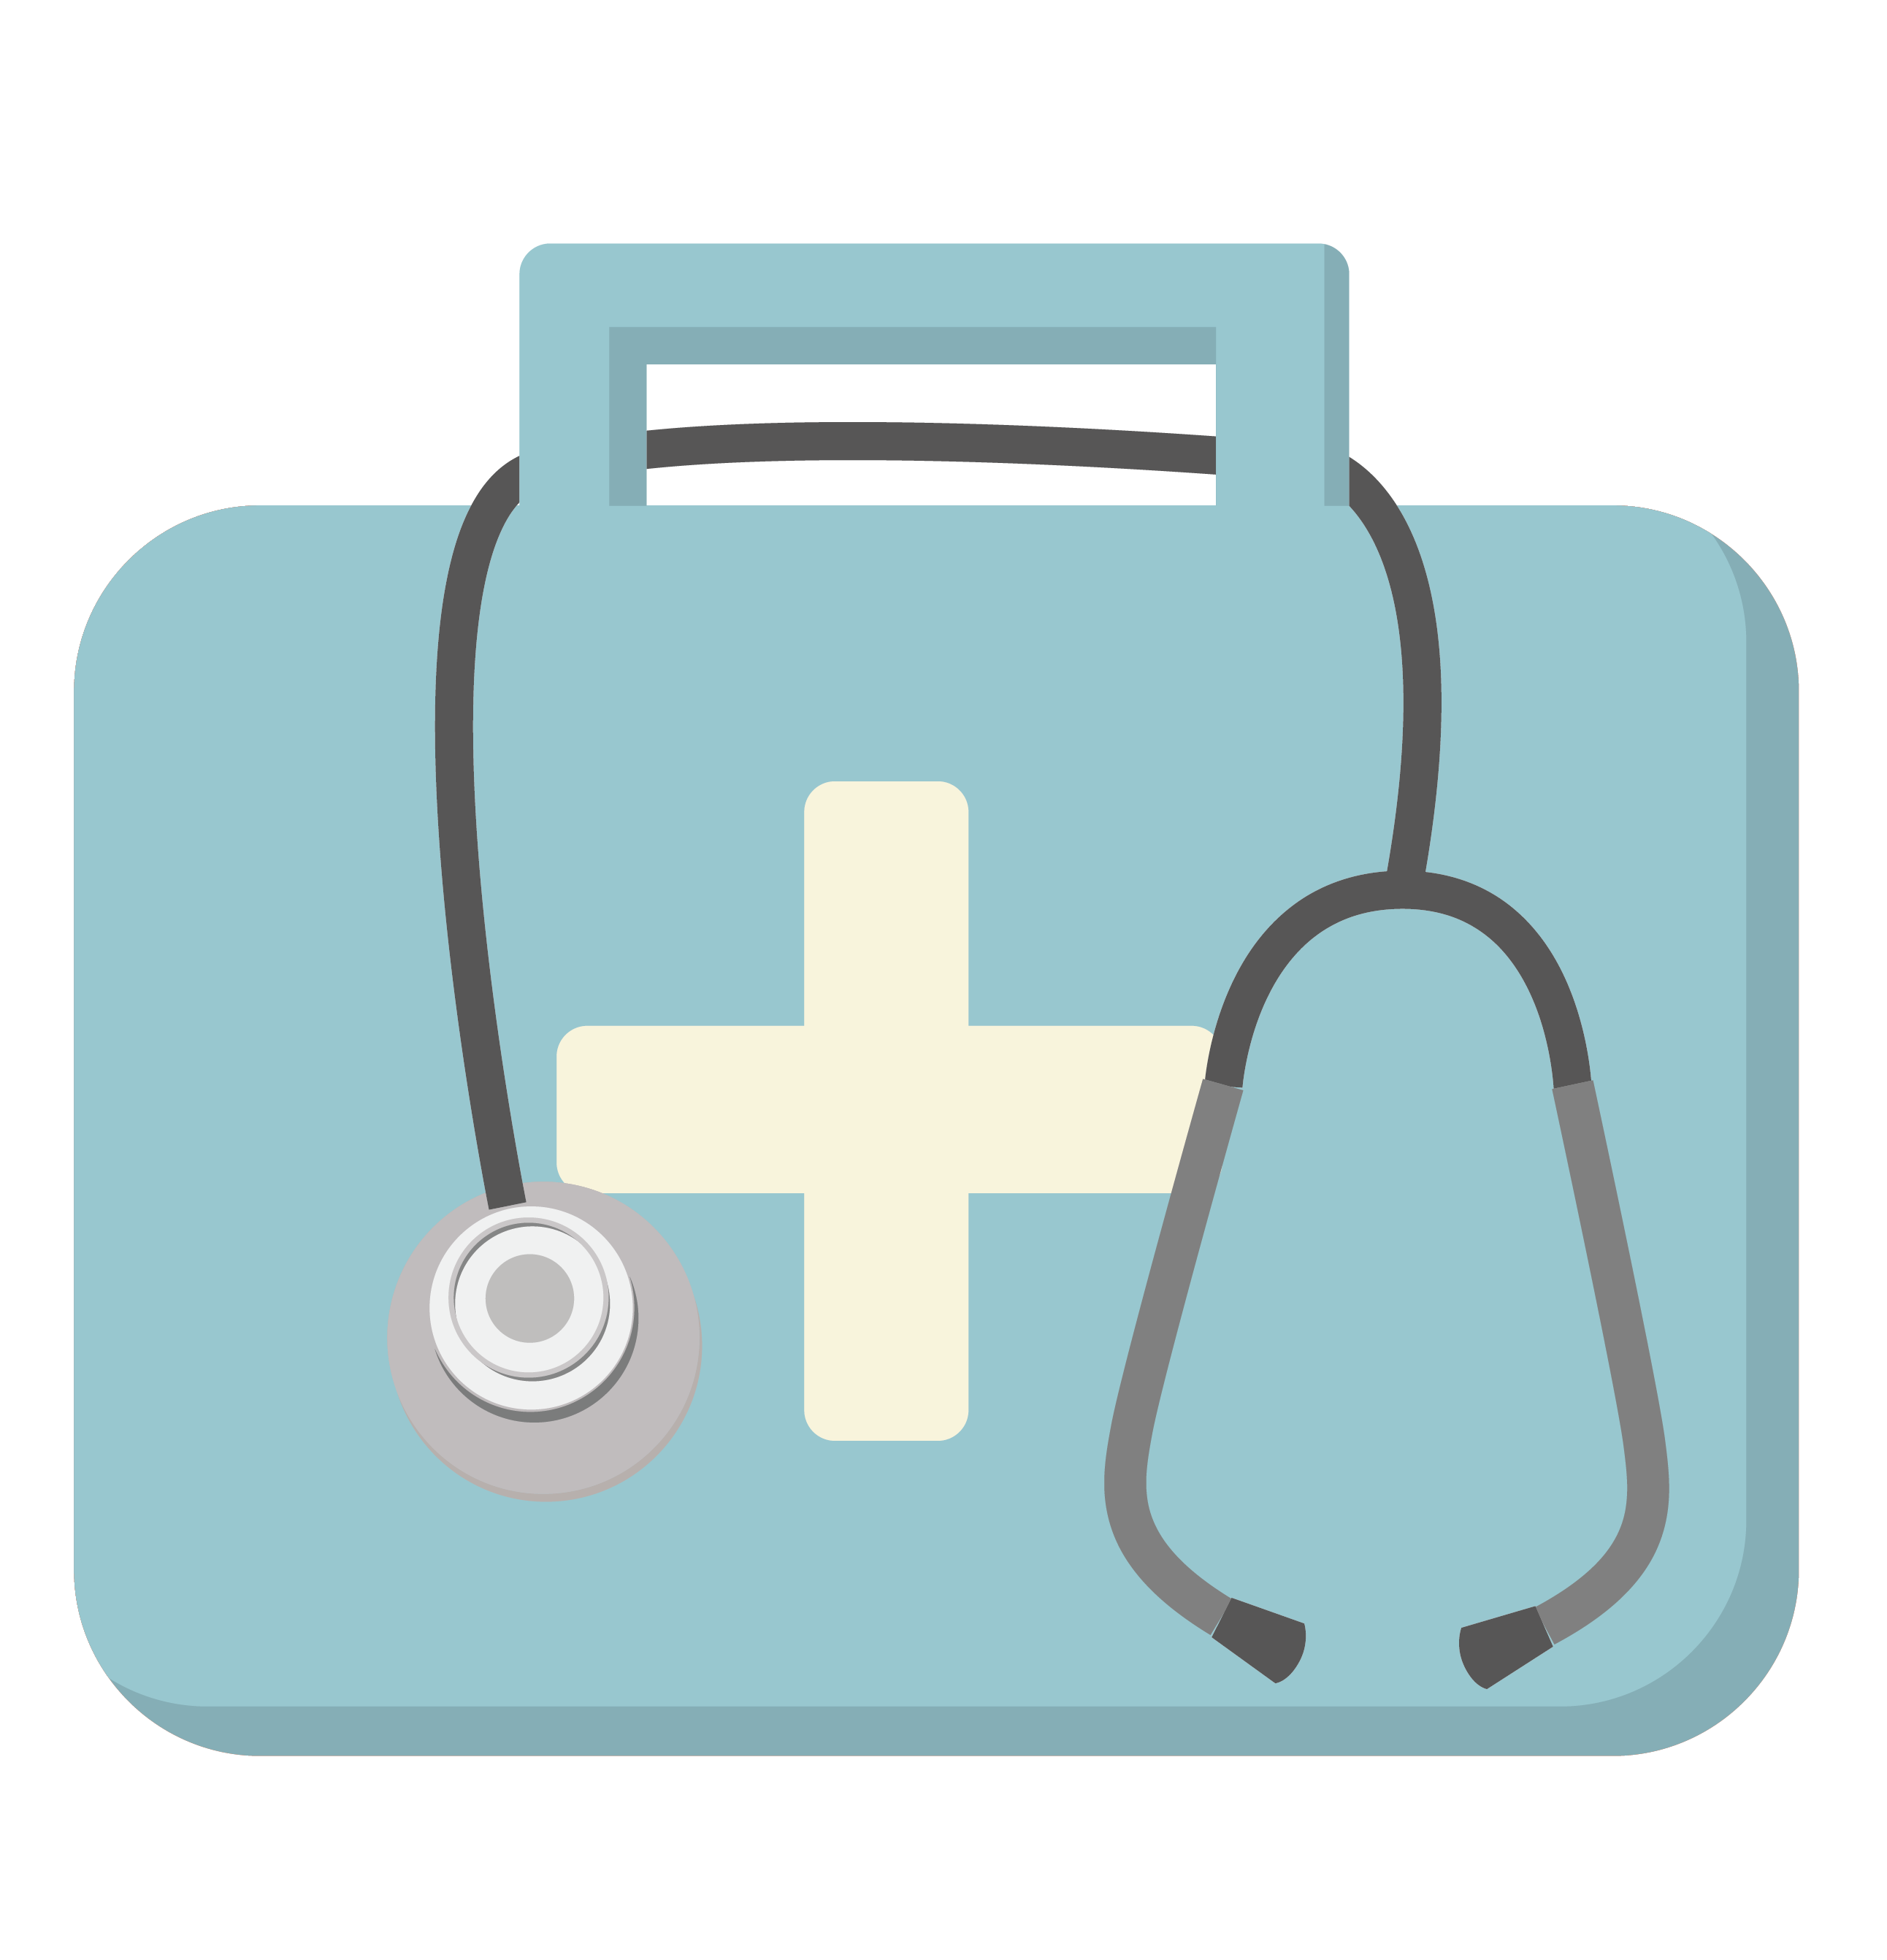 Health Check - First Aid box (crop)